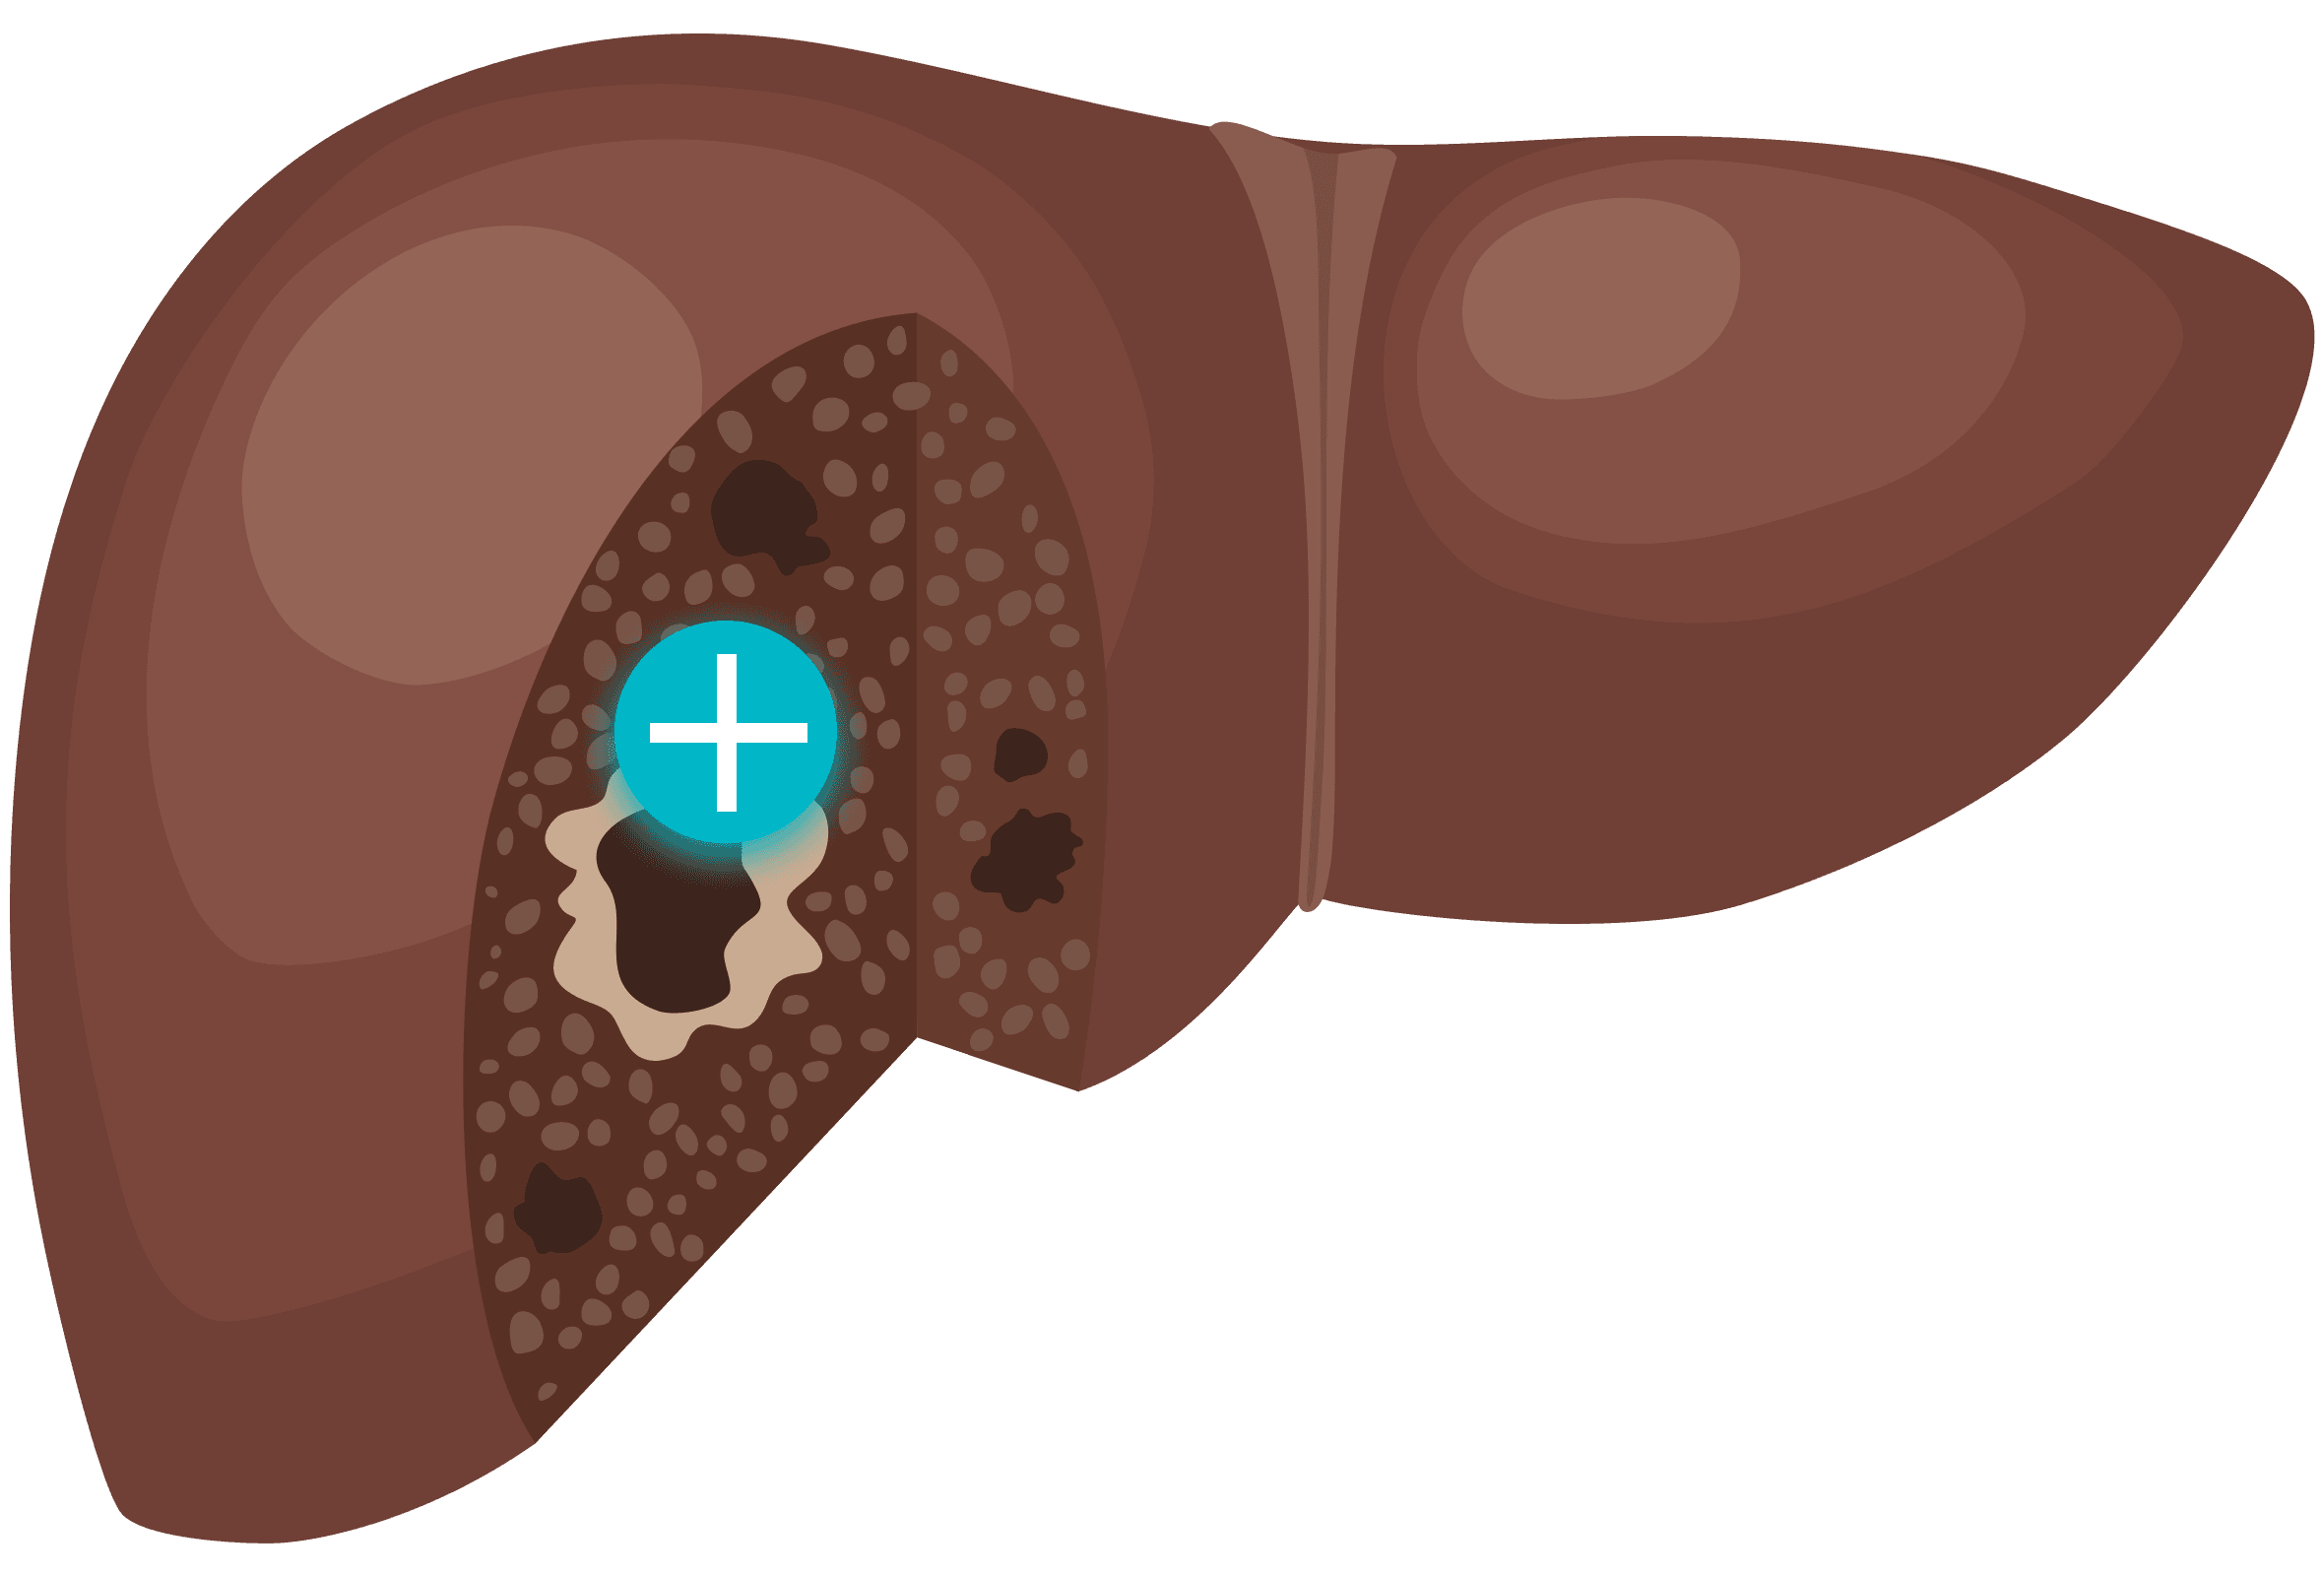 Image of liverCancer liver